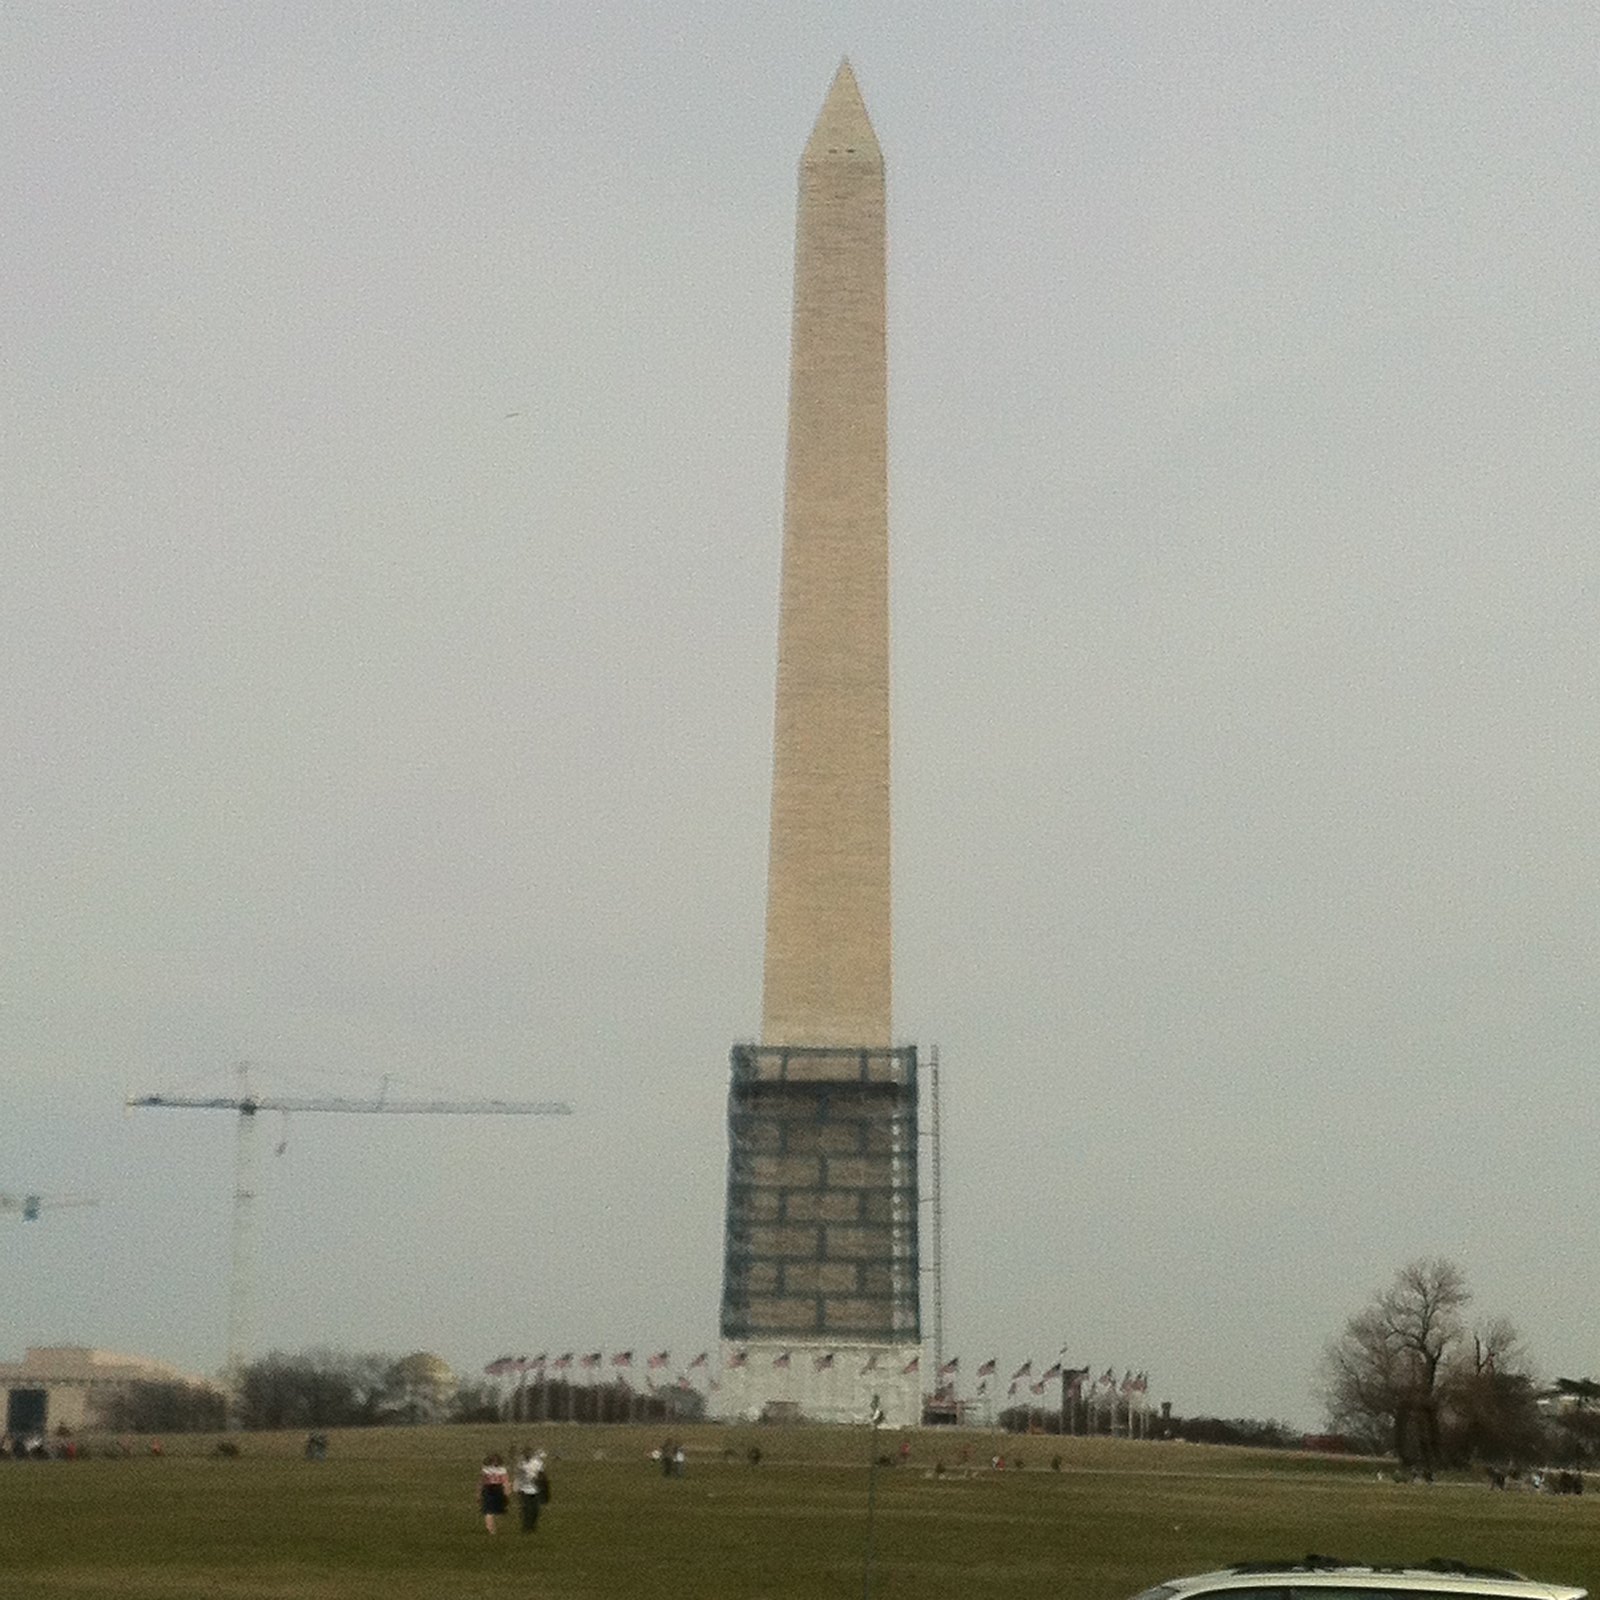 WaMo (Washington Monument)